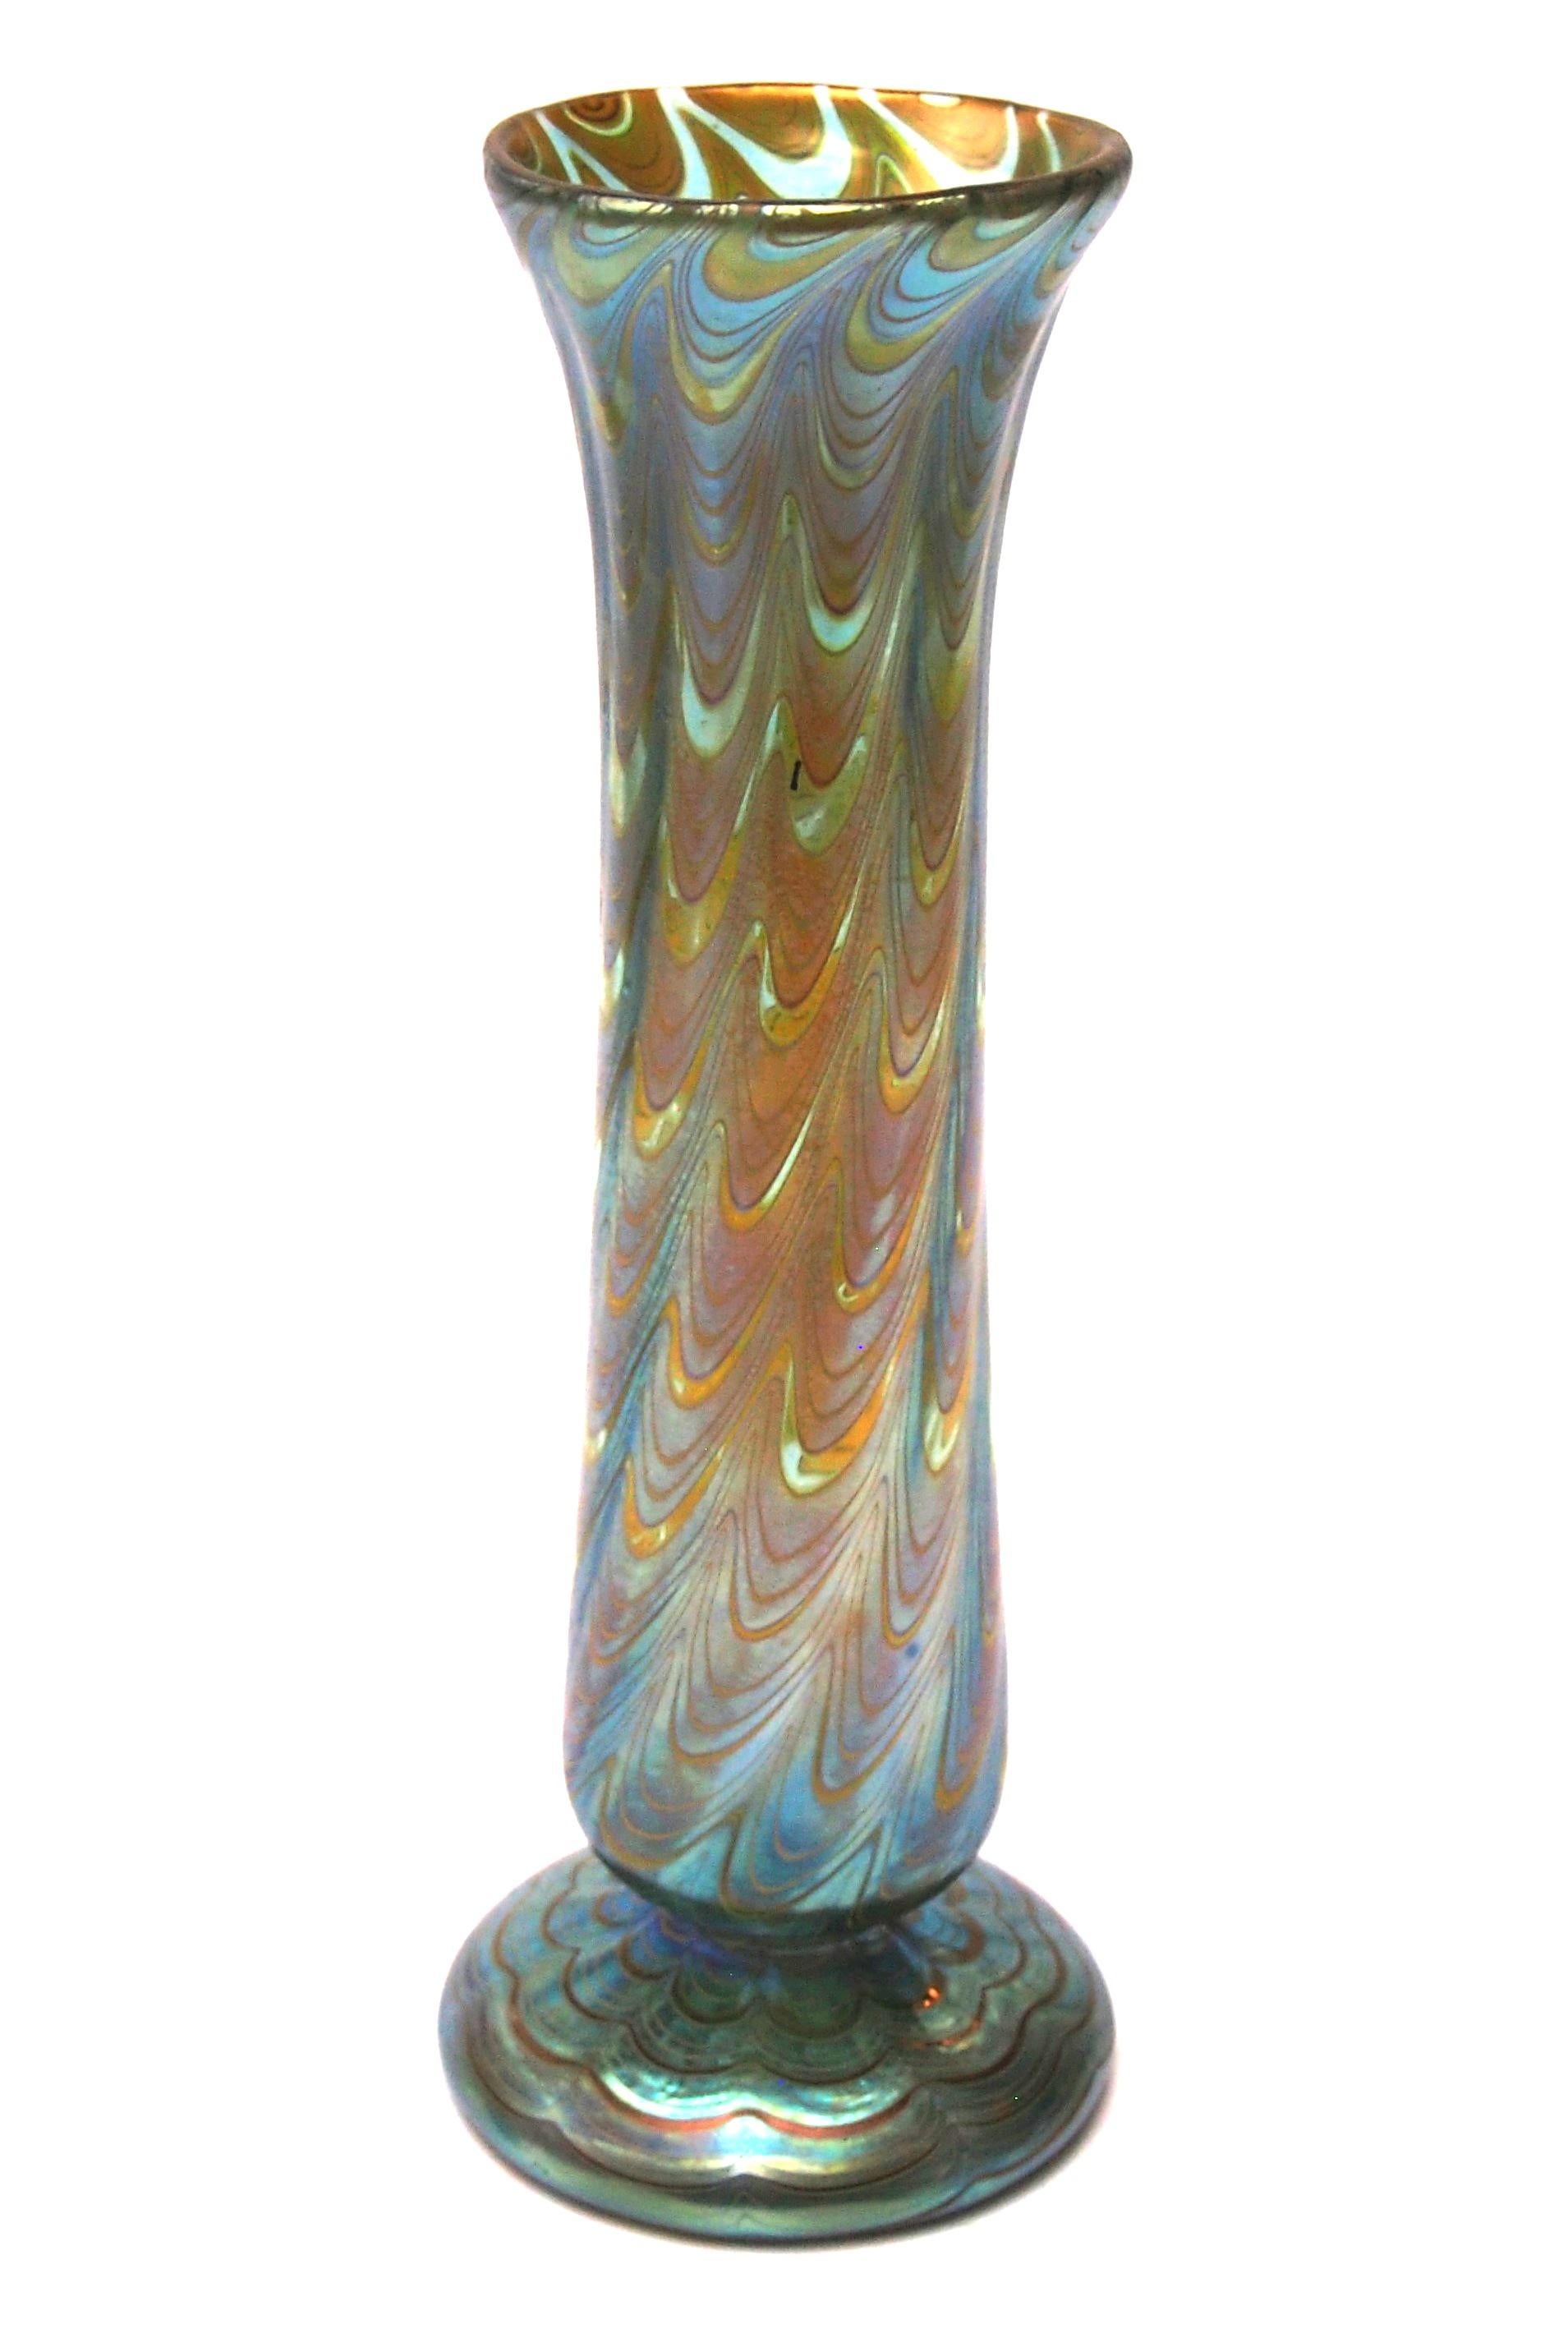 Un superbe vase Loetz Phaenomen entièrement documenté. Cet exemple est documenté par le motif PG 6893 de Phaenomen et la coloration est appelée Mountain blue (vert sur fond bleu) - Le motif PG 6893  Les fils sont dessinés en forme de vagues dans un